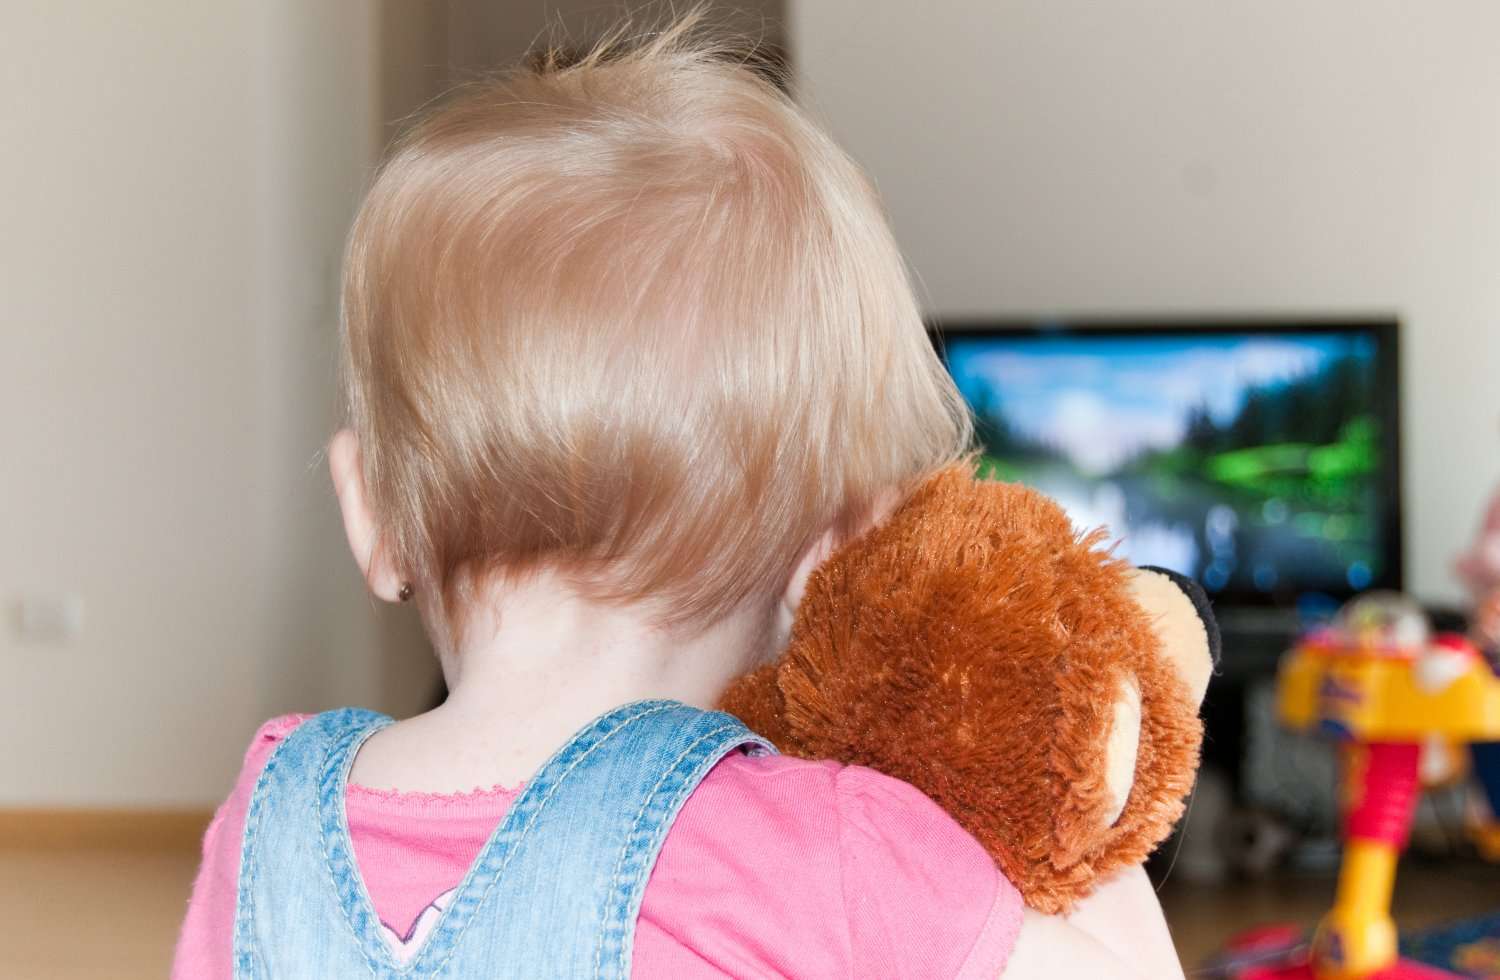 Pourquoi faut-il limiter le temps qu’un enfant passe devant un écran ?